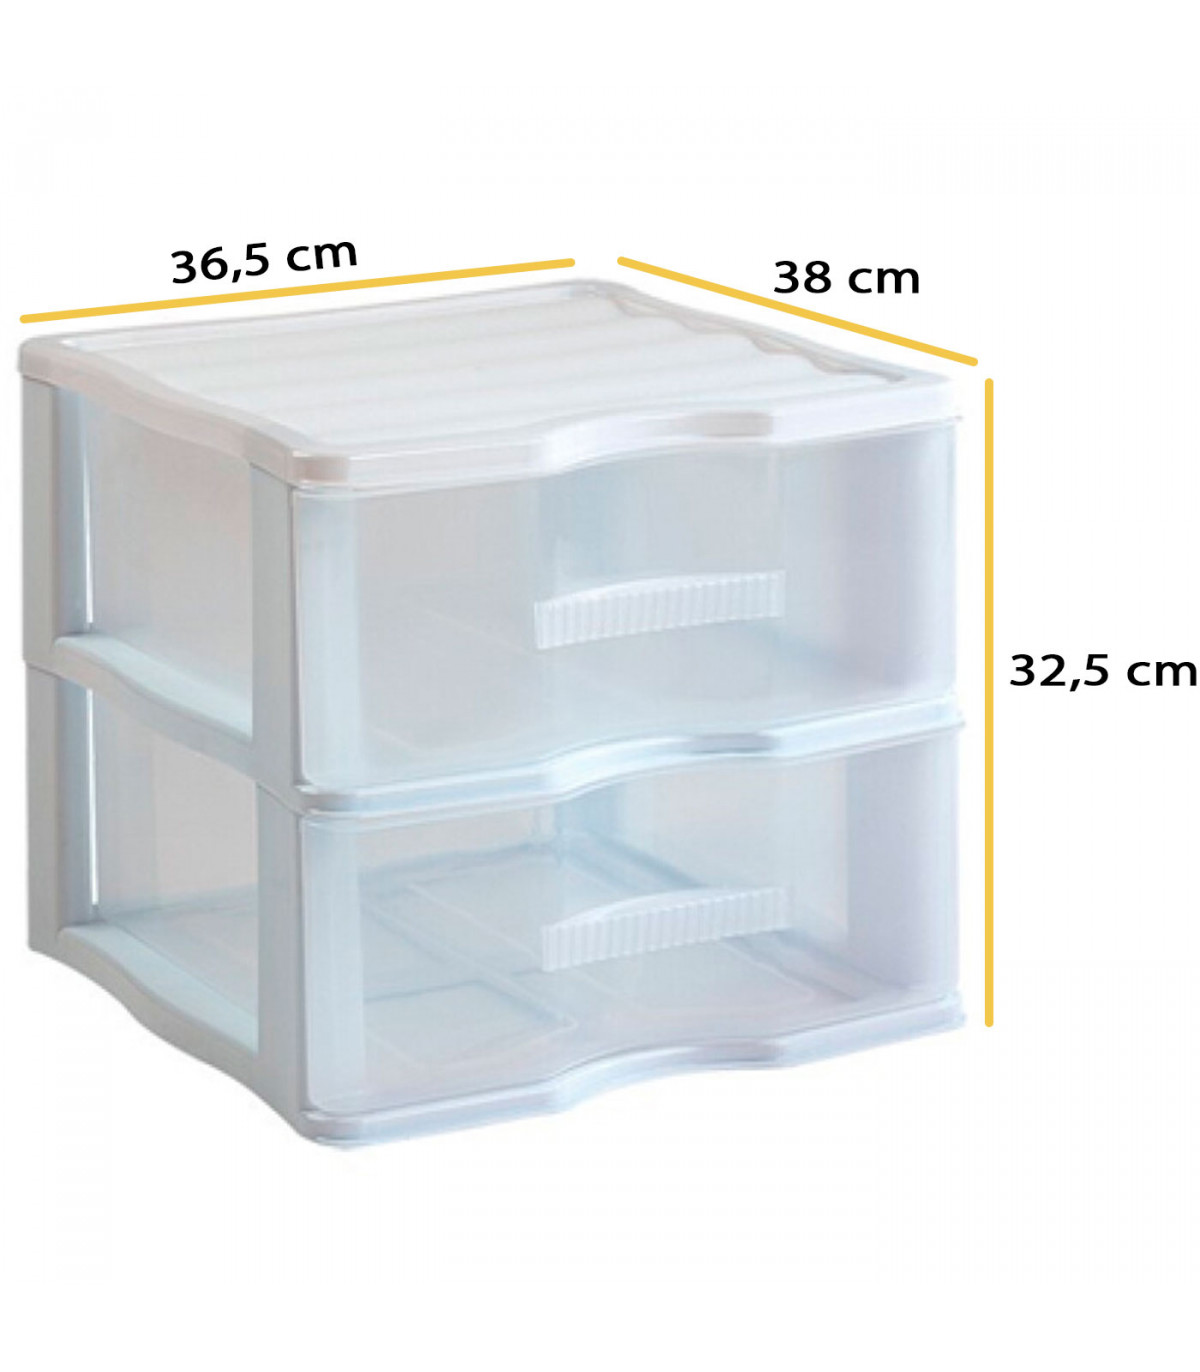 Cajonera Plástico Transparente Modular (2 cajones, 23 x 17 x 11 cm)